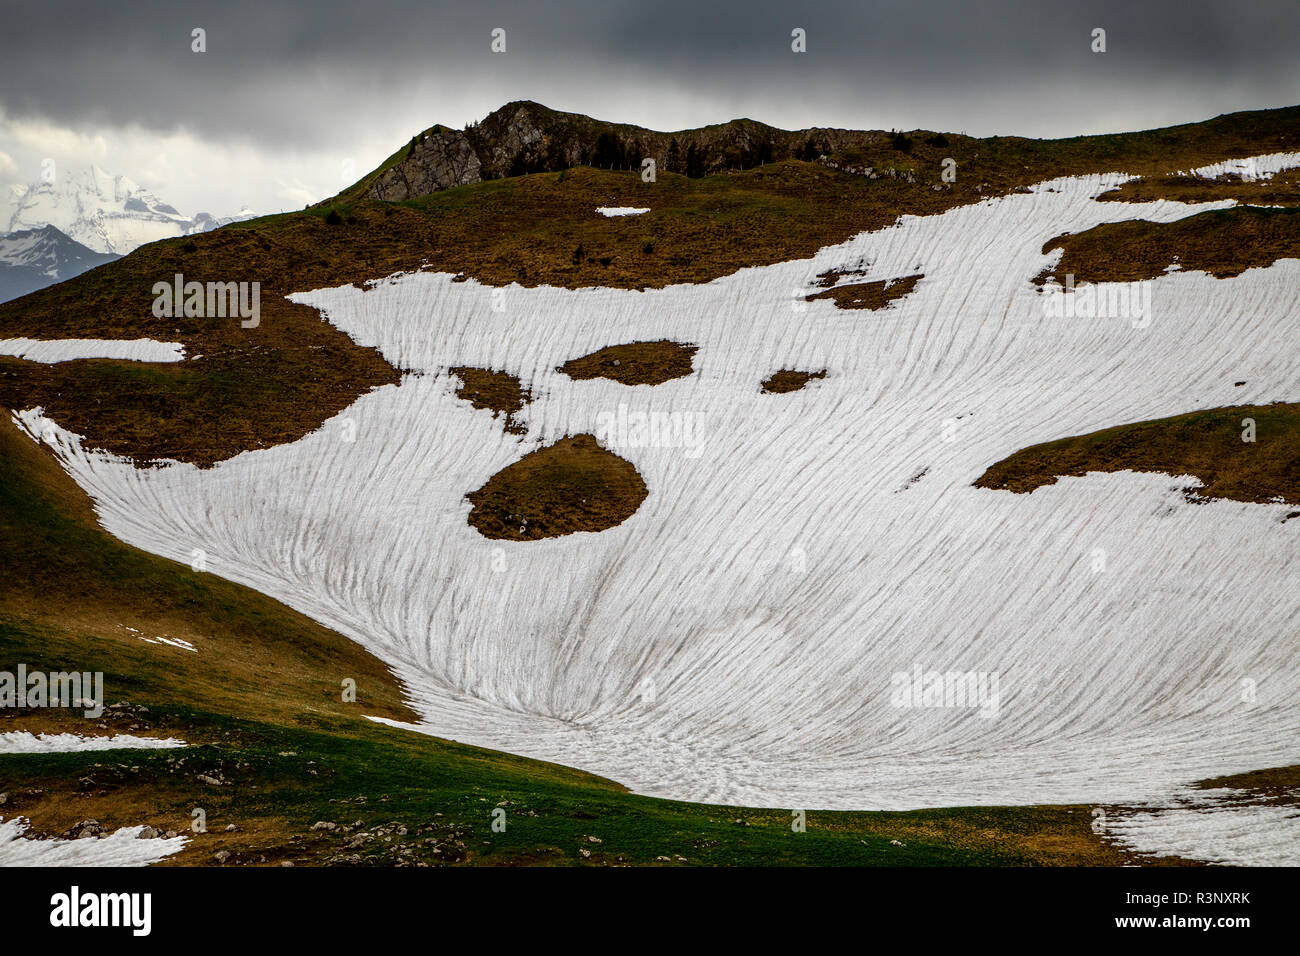 En el Puerto Gurnigel de Suiza se observan manchas de nieve blanca. Los glaciares de los Alpes se están derritiendo rápidamente debido al calentamiento global, y se prevé que muchos de ellos desapararán en 2070. La cubierta de nieve blanca refleja la luz del sol y el calor mucho mejor que el hielo más oscuro. En el invierno de 2017/2018 se registraron cantidades récord de nieve en los alpes, pero las temperaturas récord en el verano ya se derritieron la mayor parte de ella en junio. Foto de stock